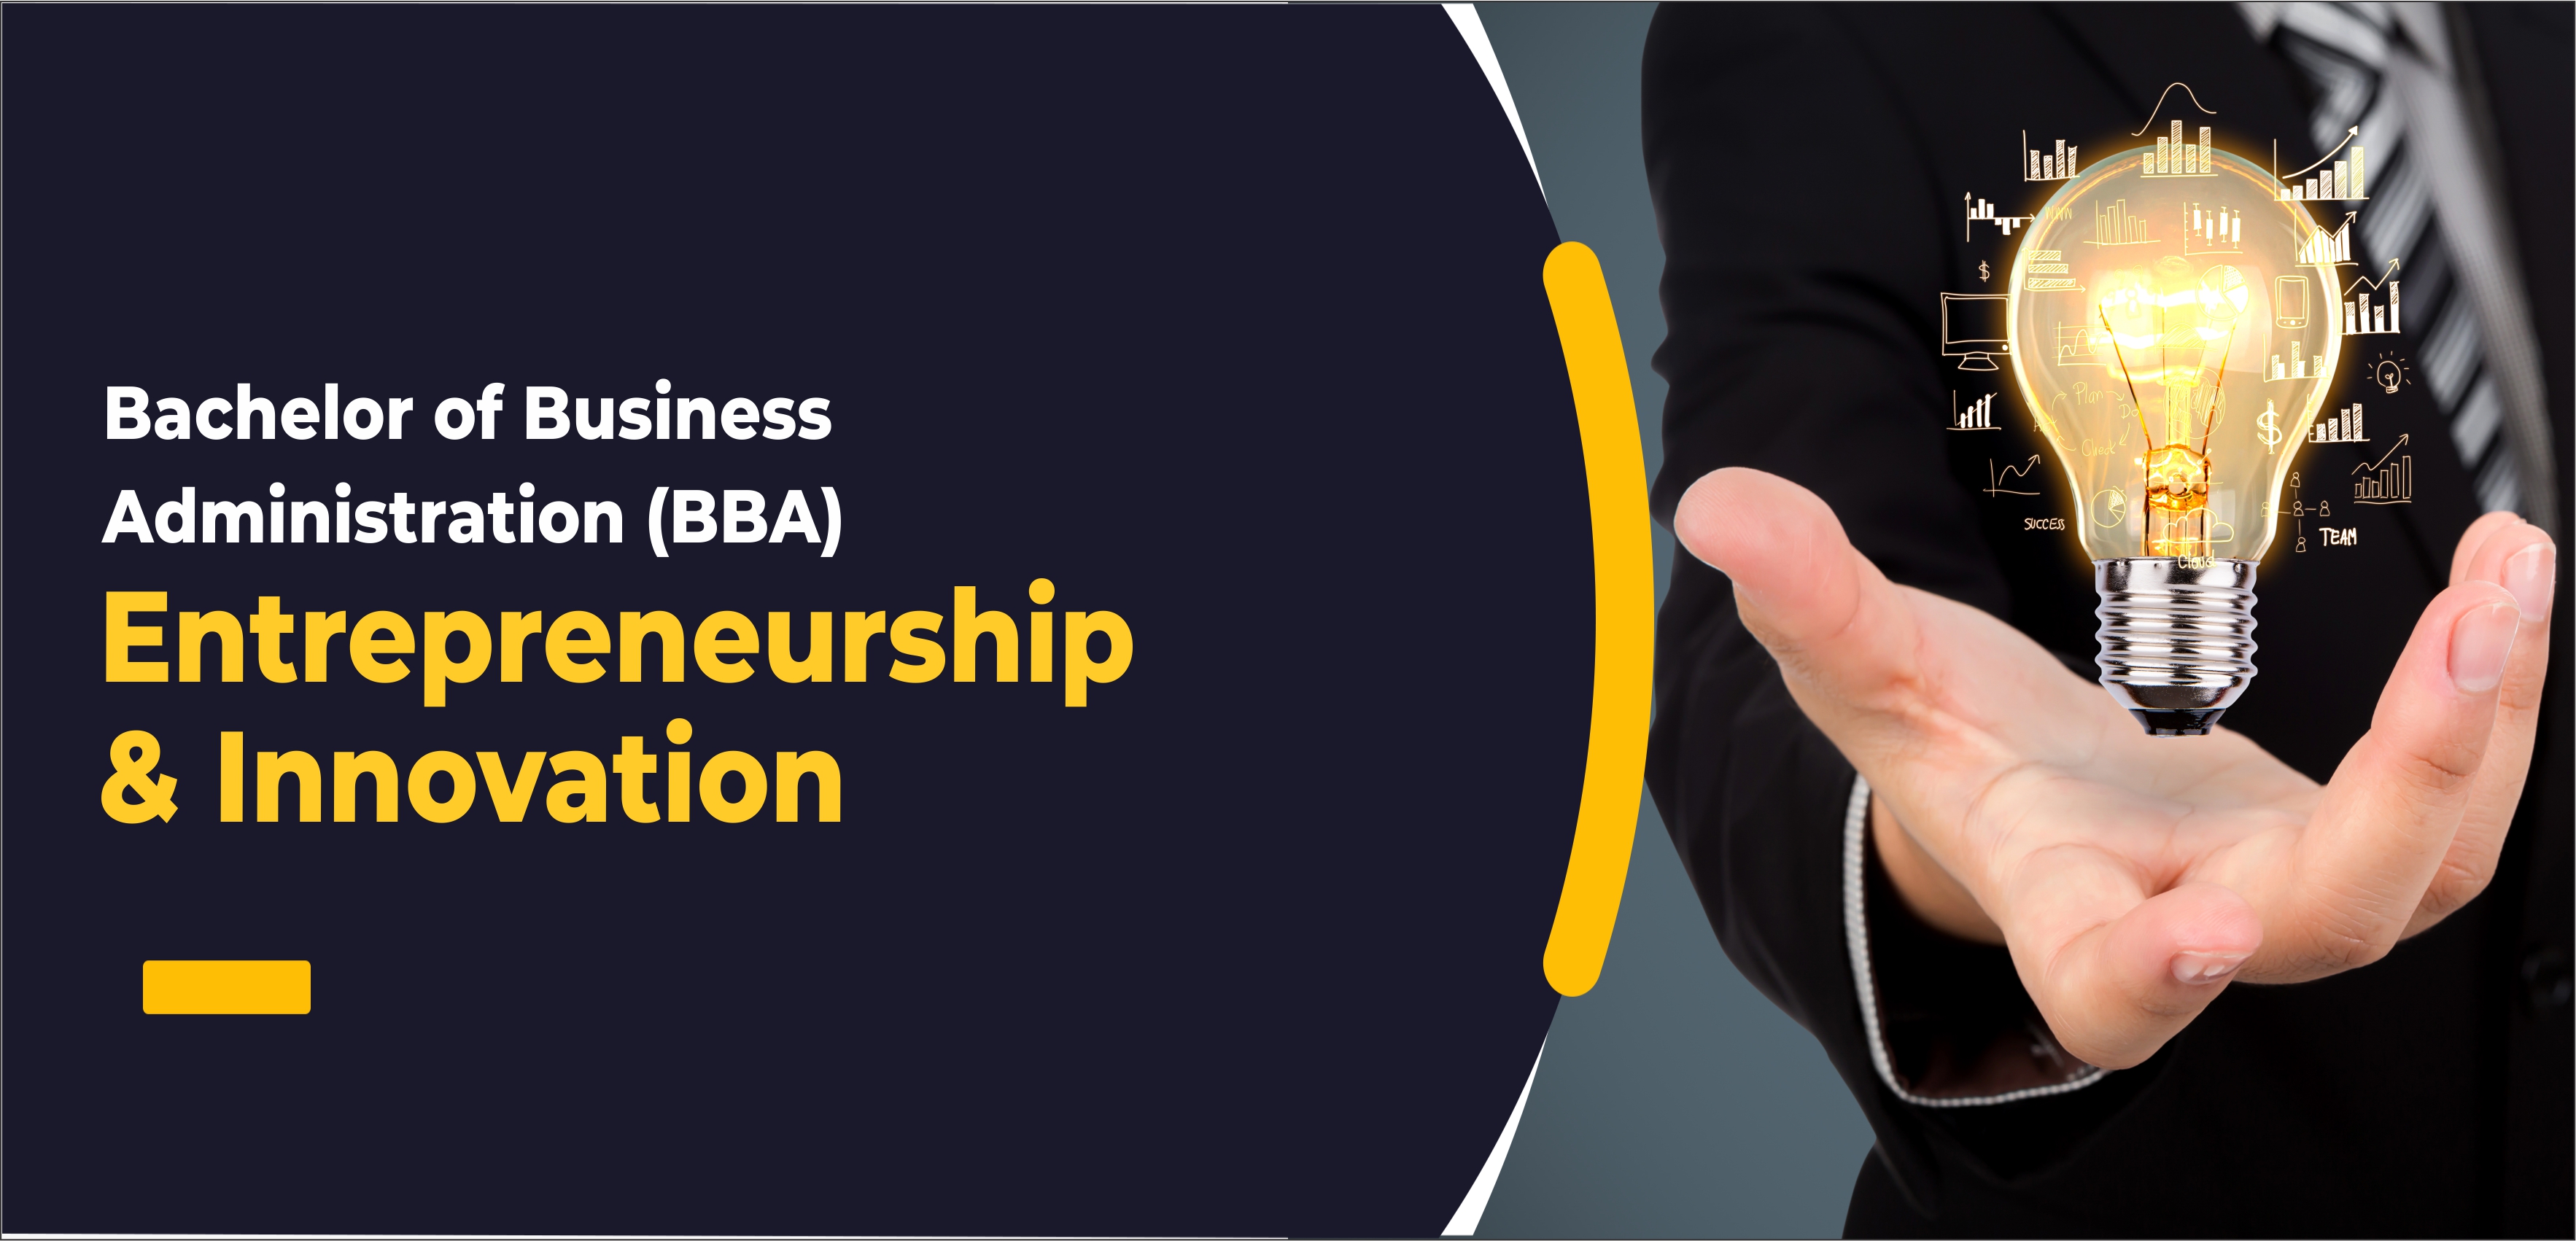 BBA - Bachelor of Business Administration (Entrepreneurship & Innovation)